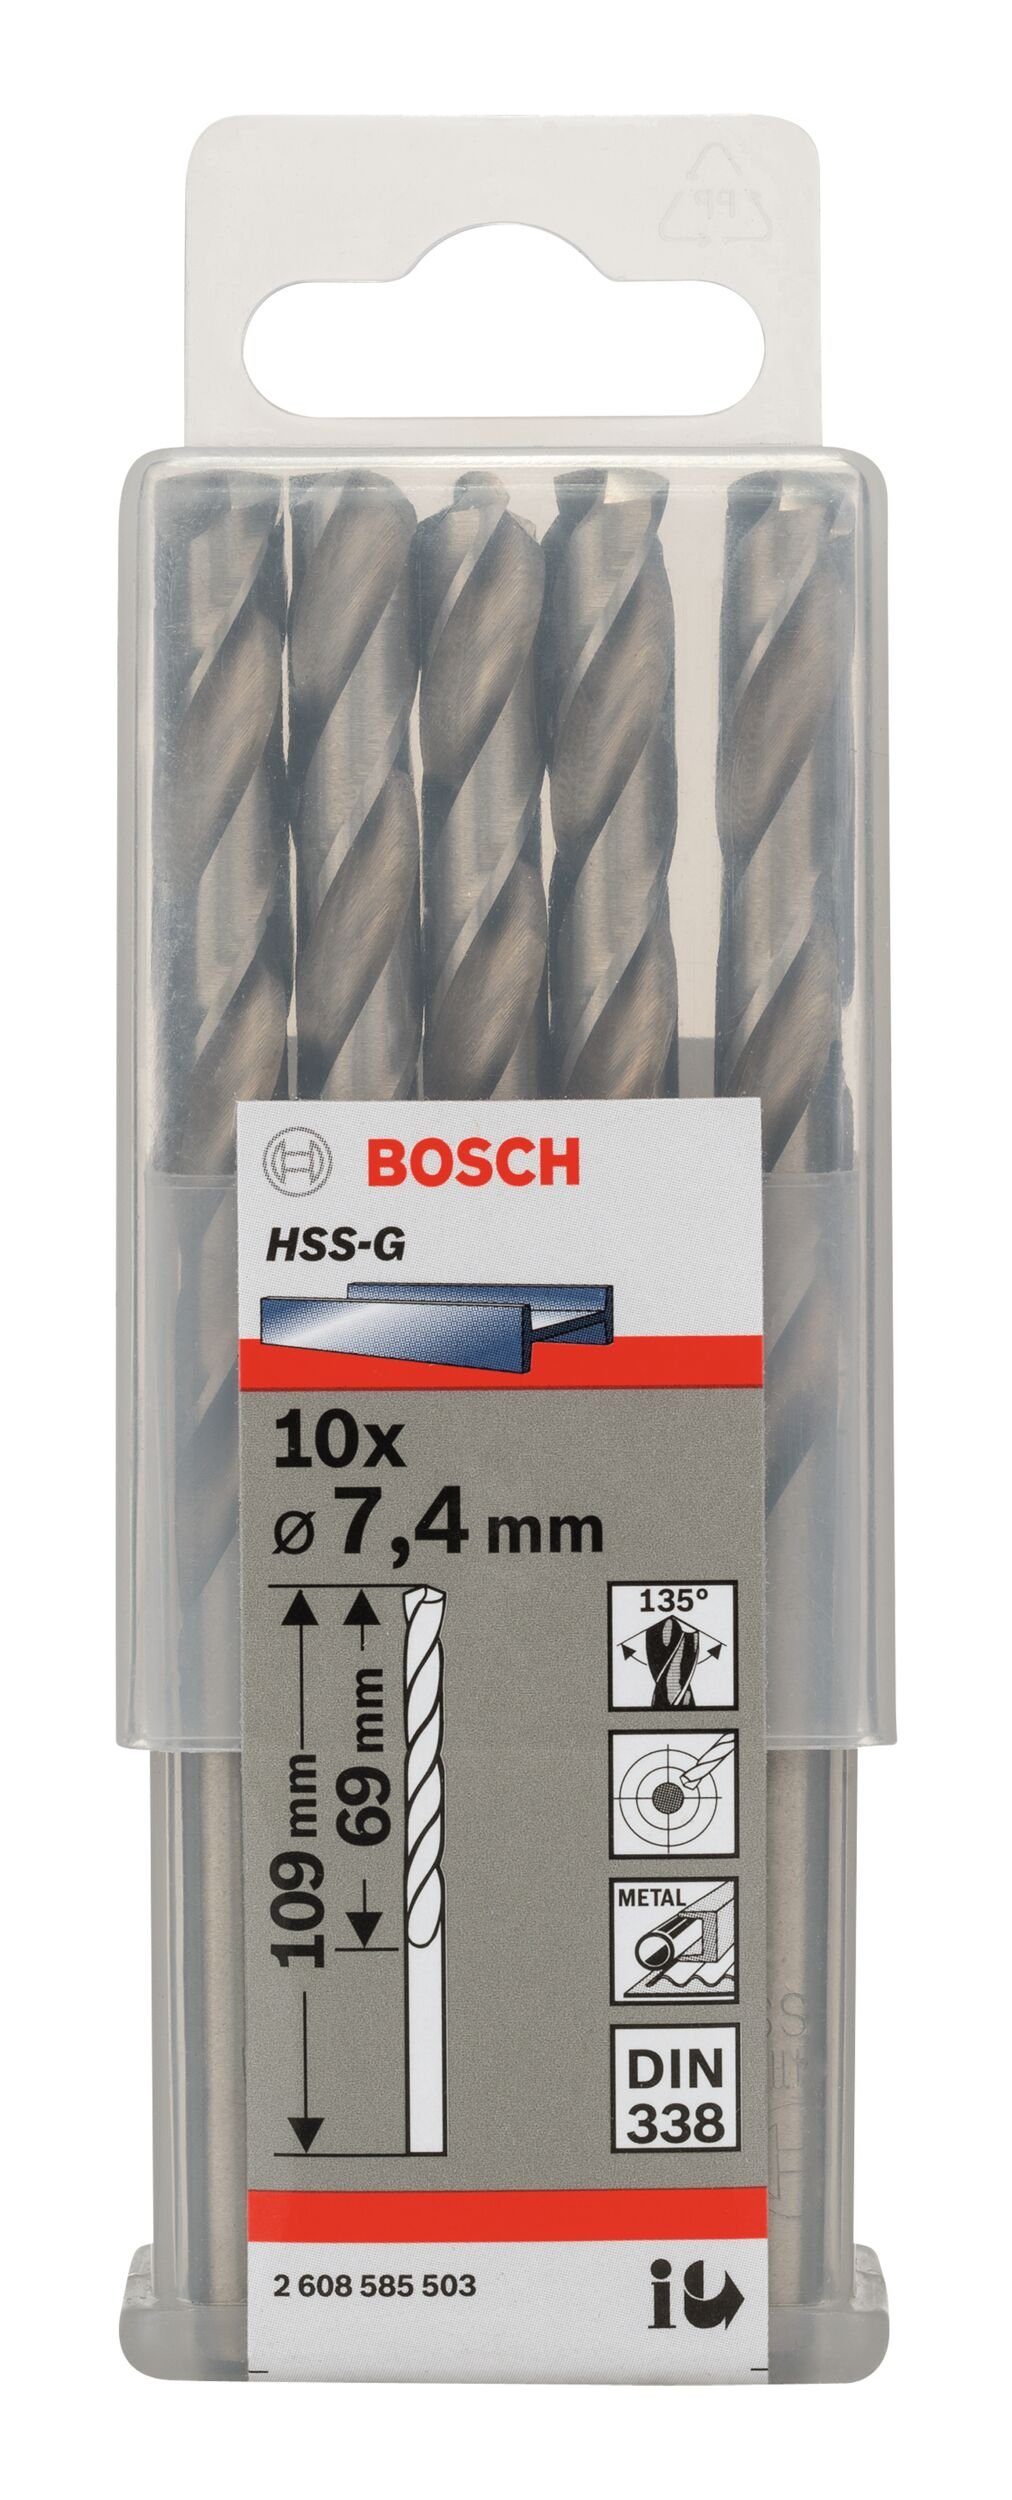 HSS-G 10er-Pack - 109 338) (DIN (10 Stück), - 69 BOSCH x 7,4 mm x Metallbohrer,